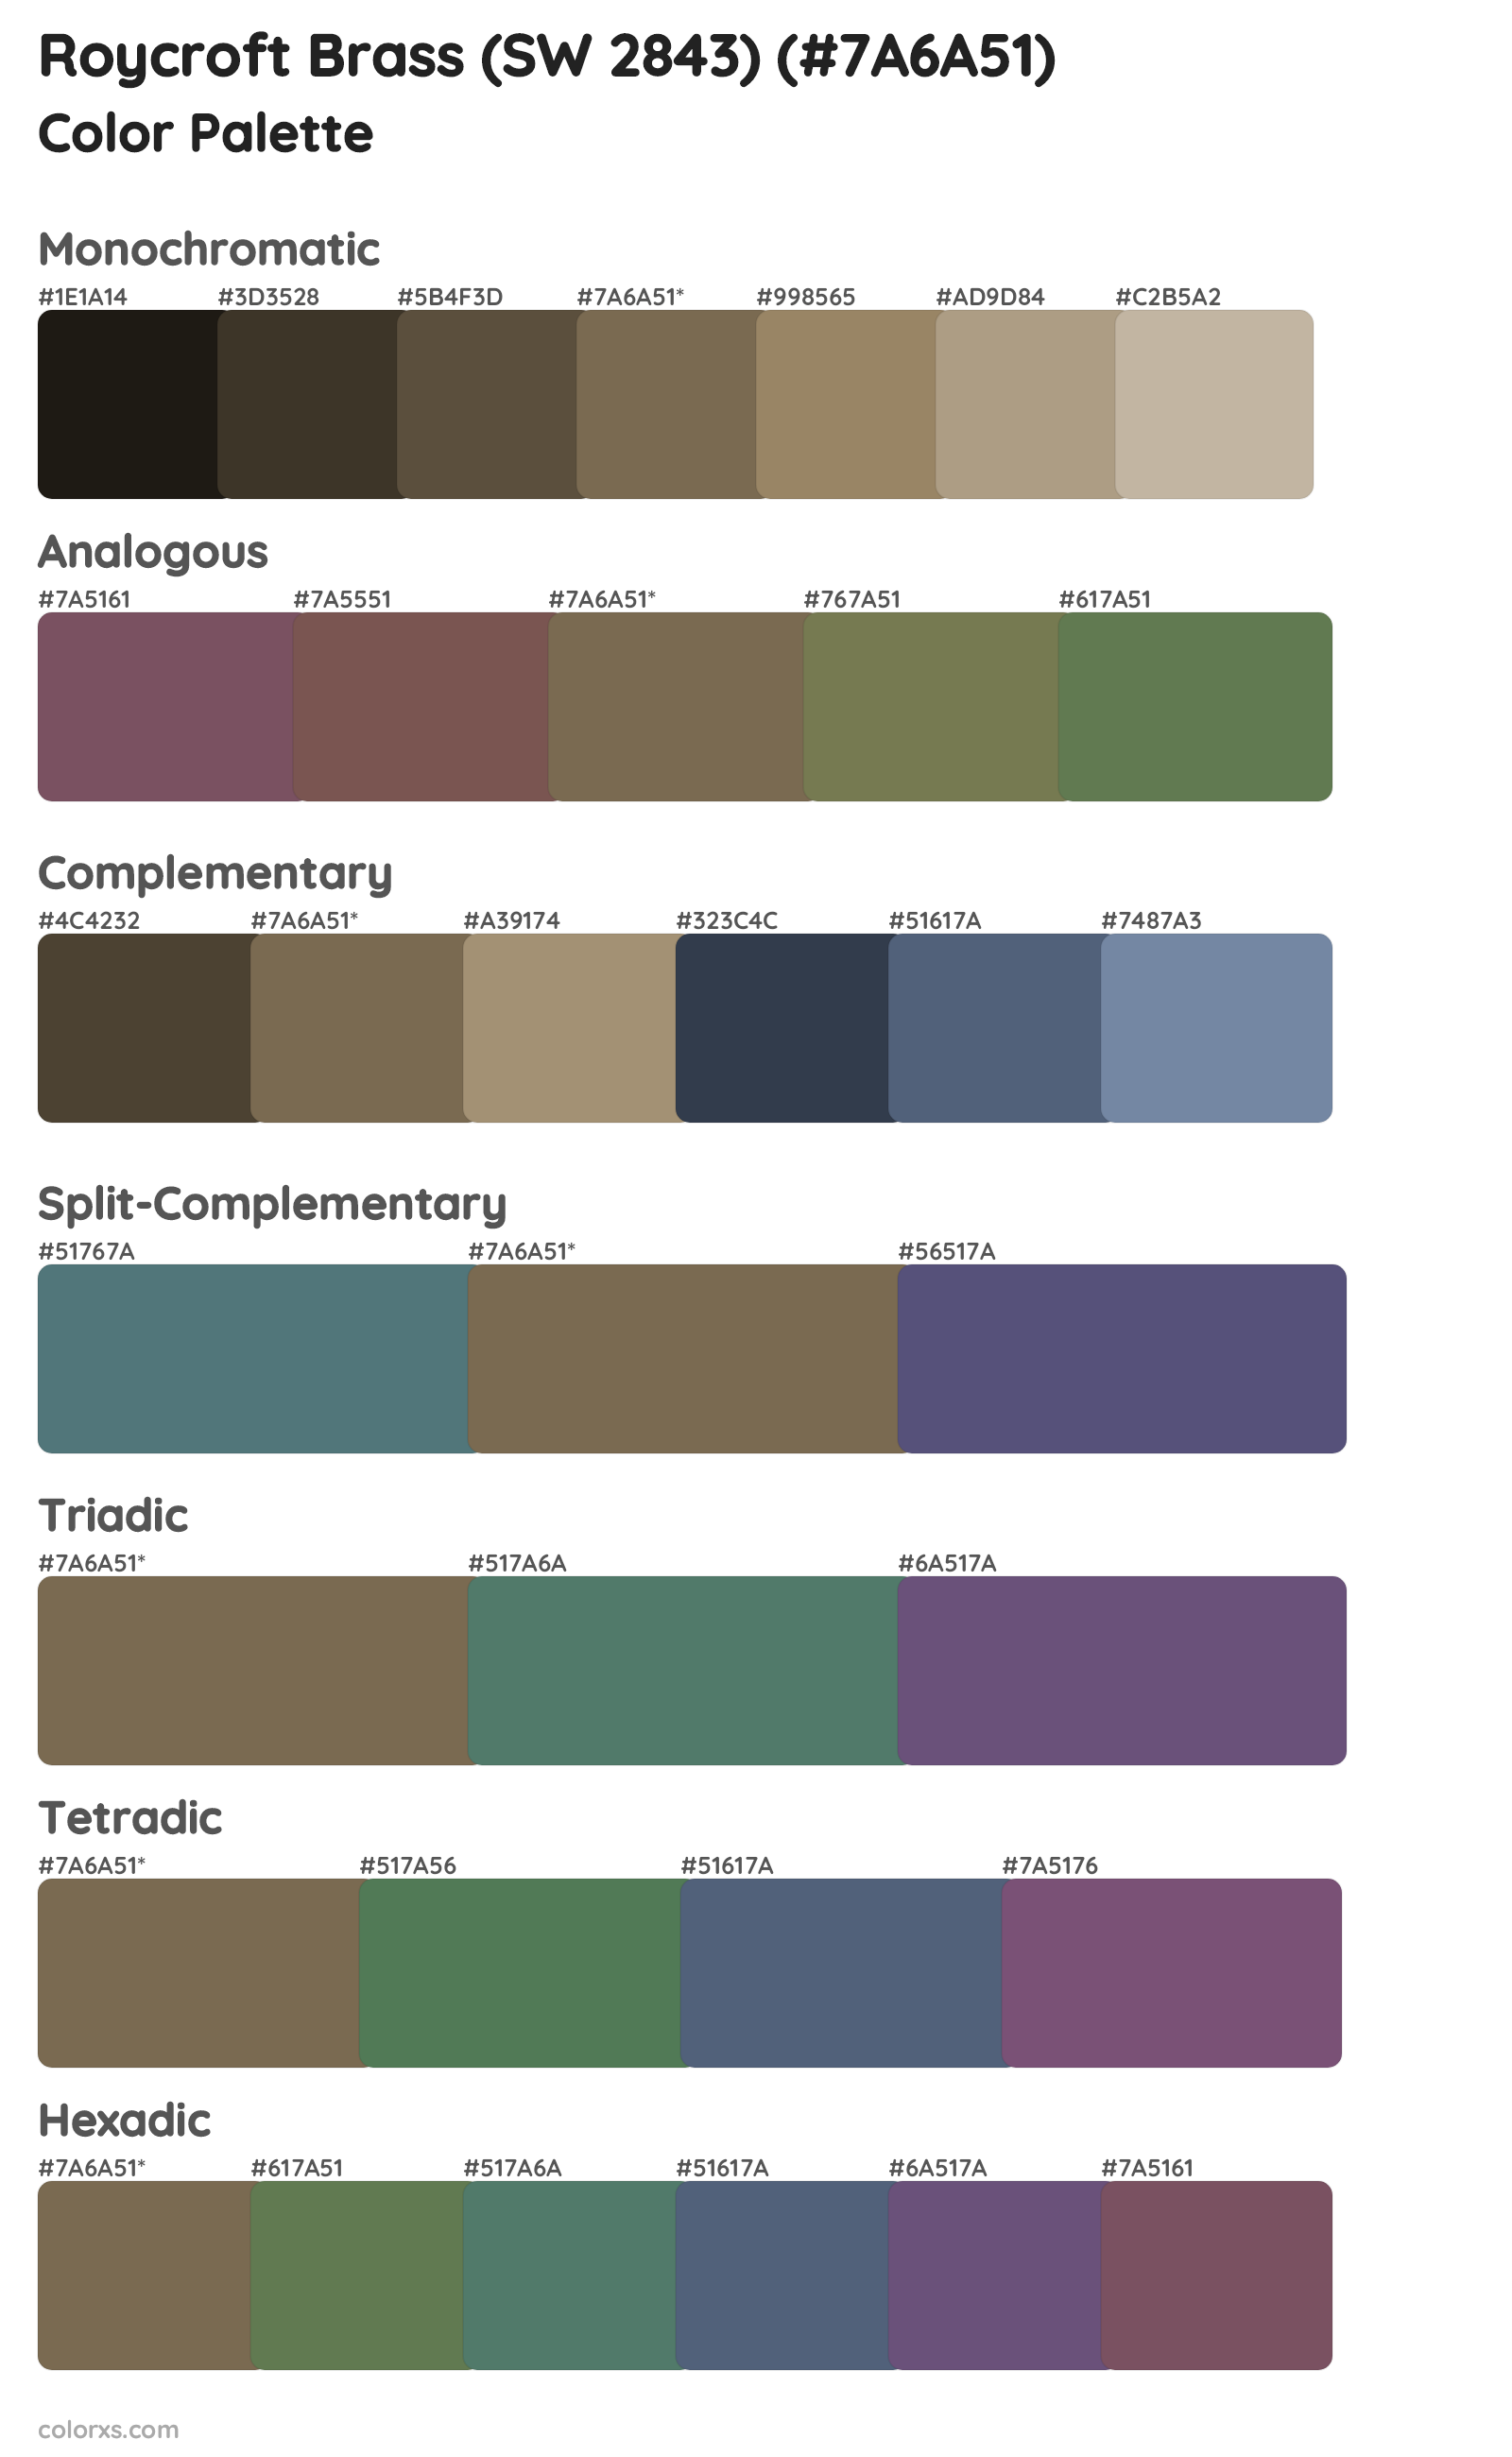 Roycroft Brass (SW 2843) Color Scheme Palettes